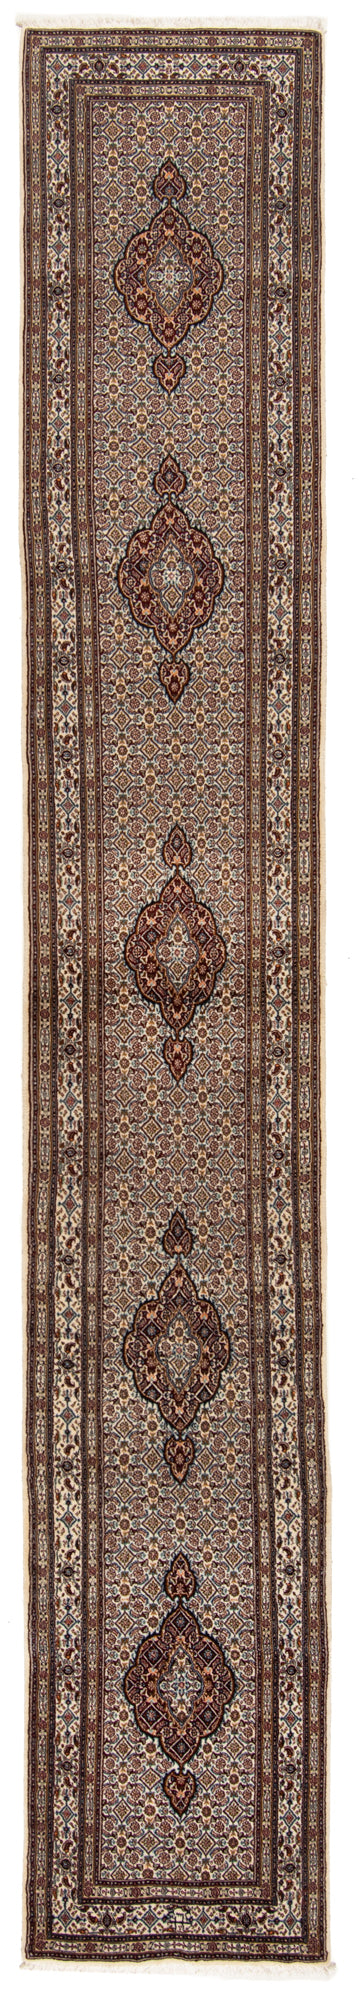 Moud con alfombra persa de seda | 501 x 77 cm